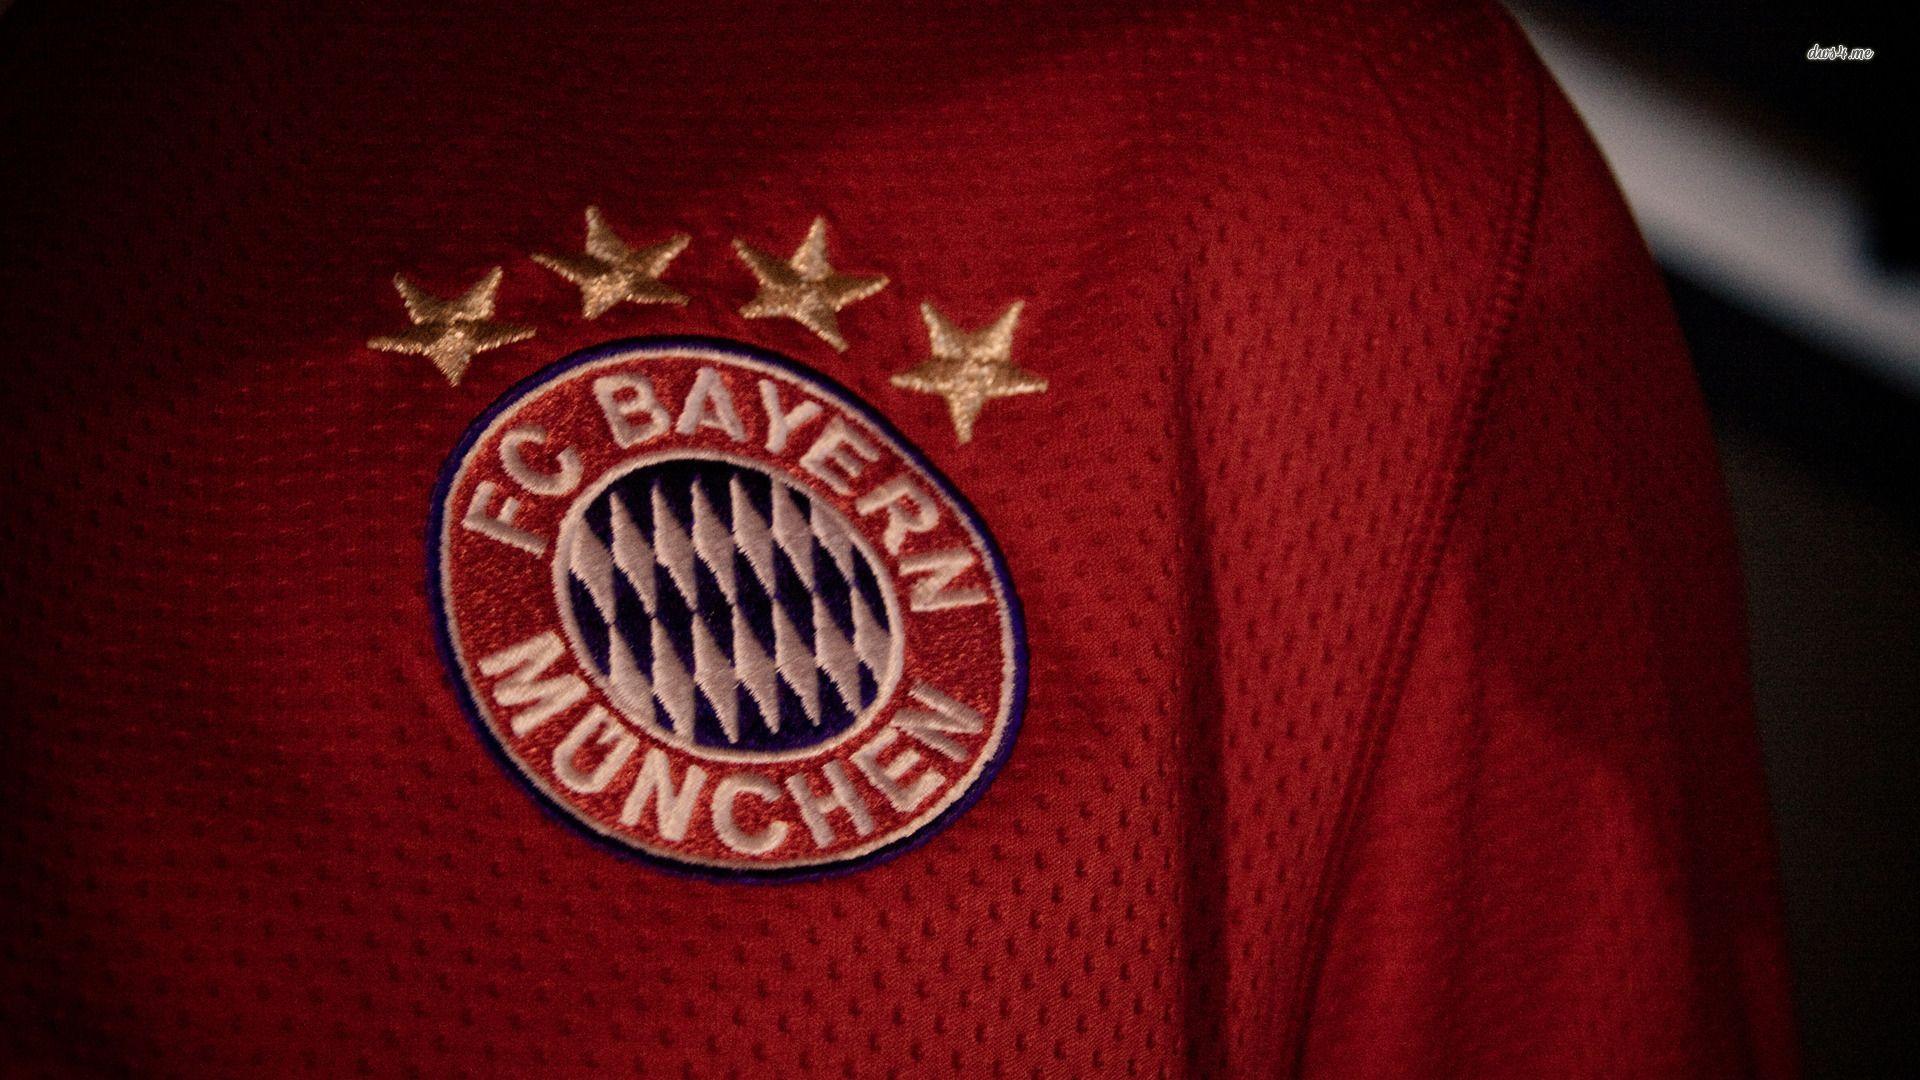 FC Bayern Munich Windows 8.1 Theme and Wallpaper